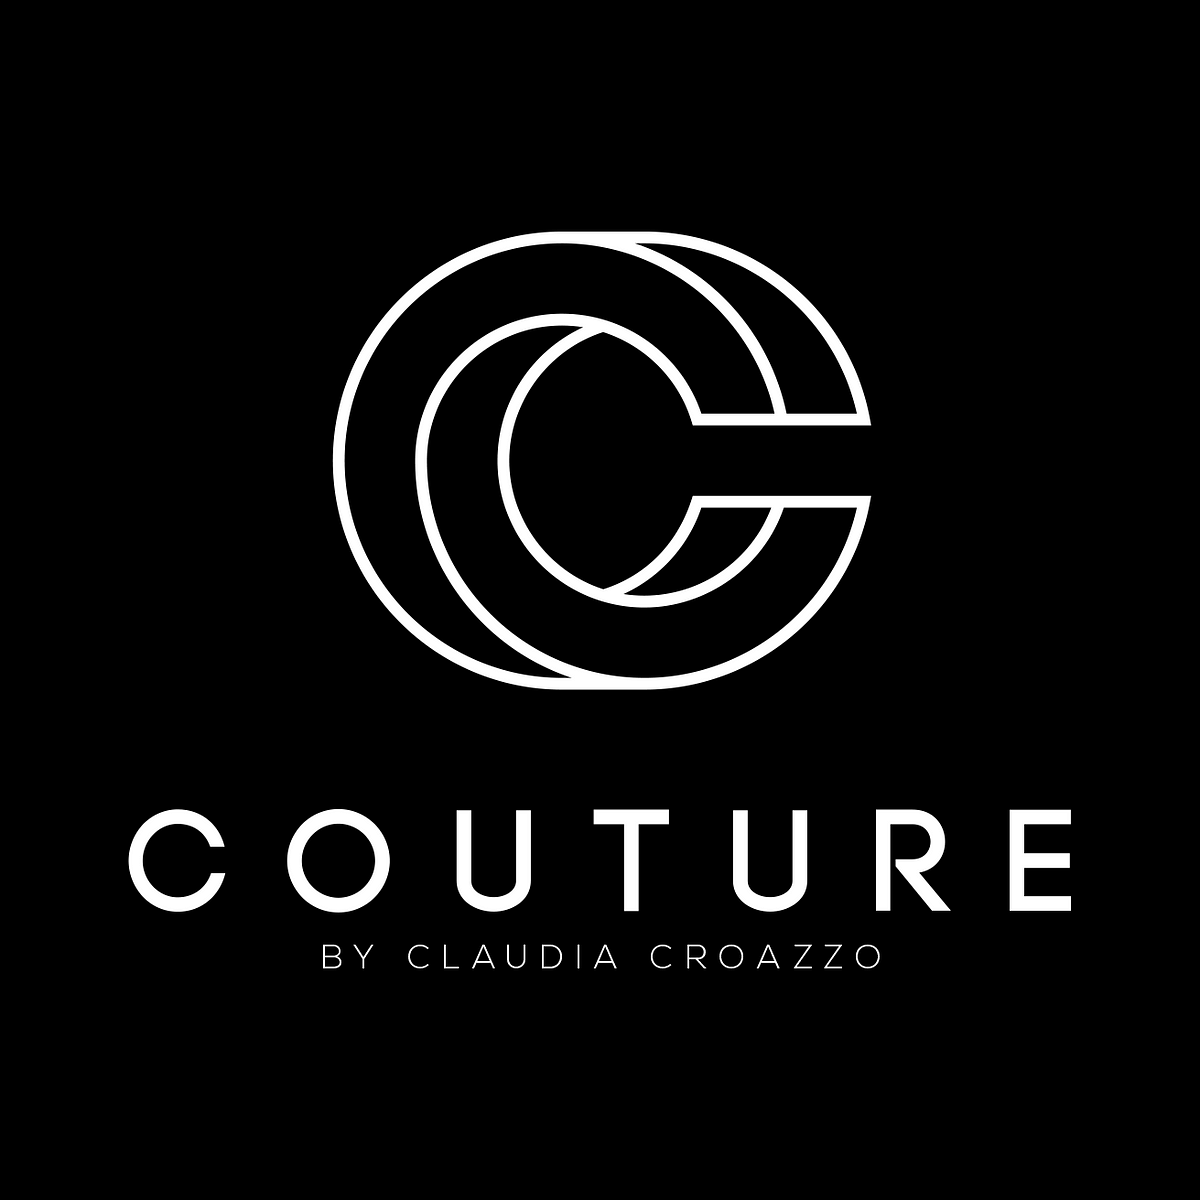 CC Couture Latest News - Medium